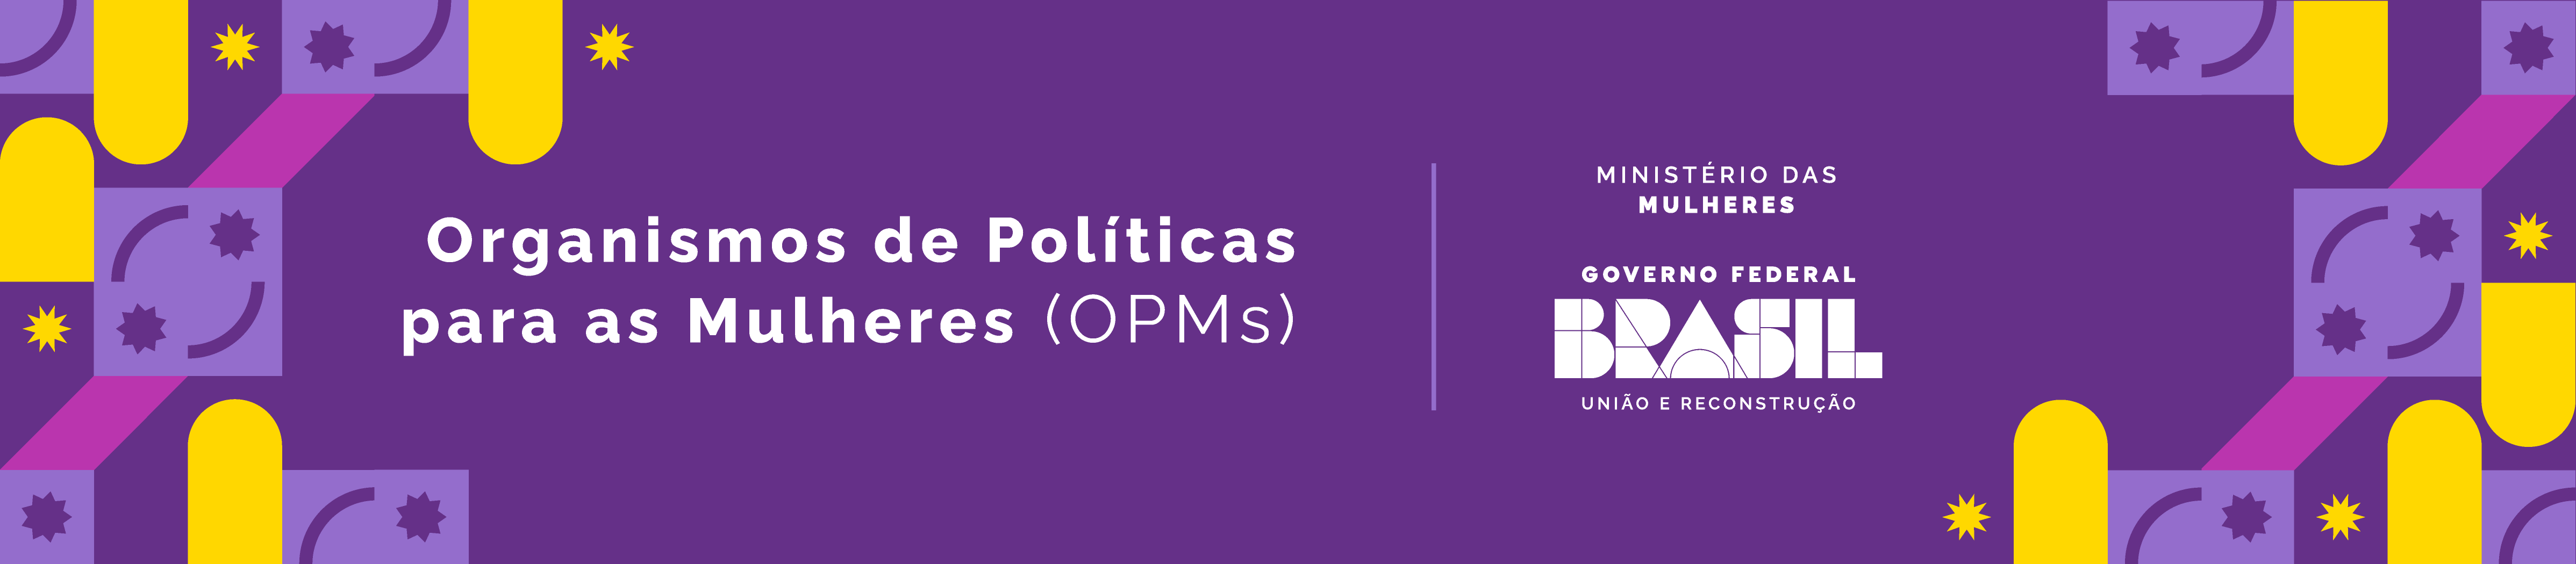 O que são os Organismos de Políticas para as Mulheres (OPM)